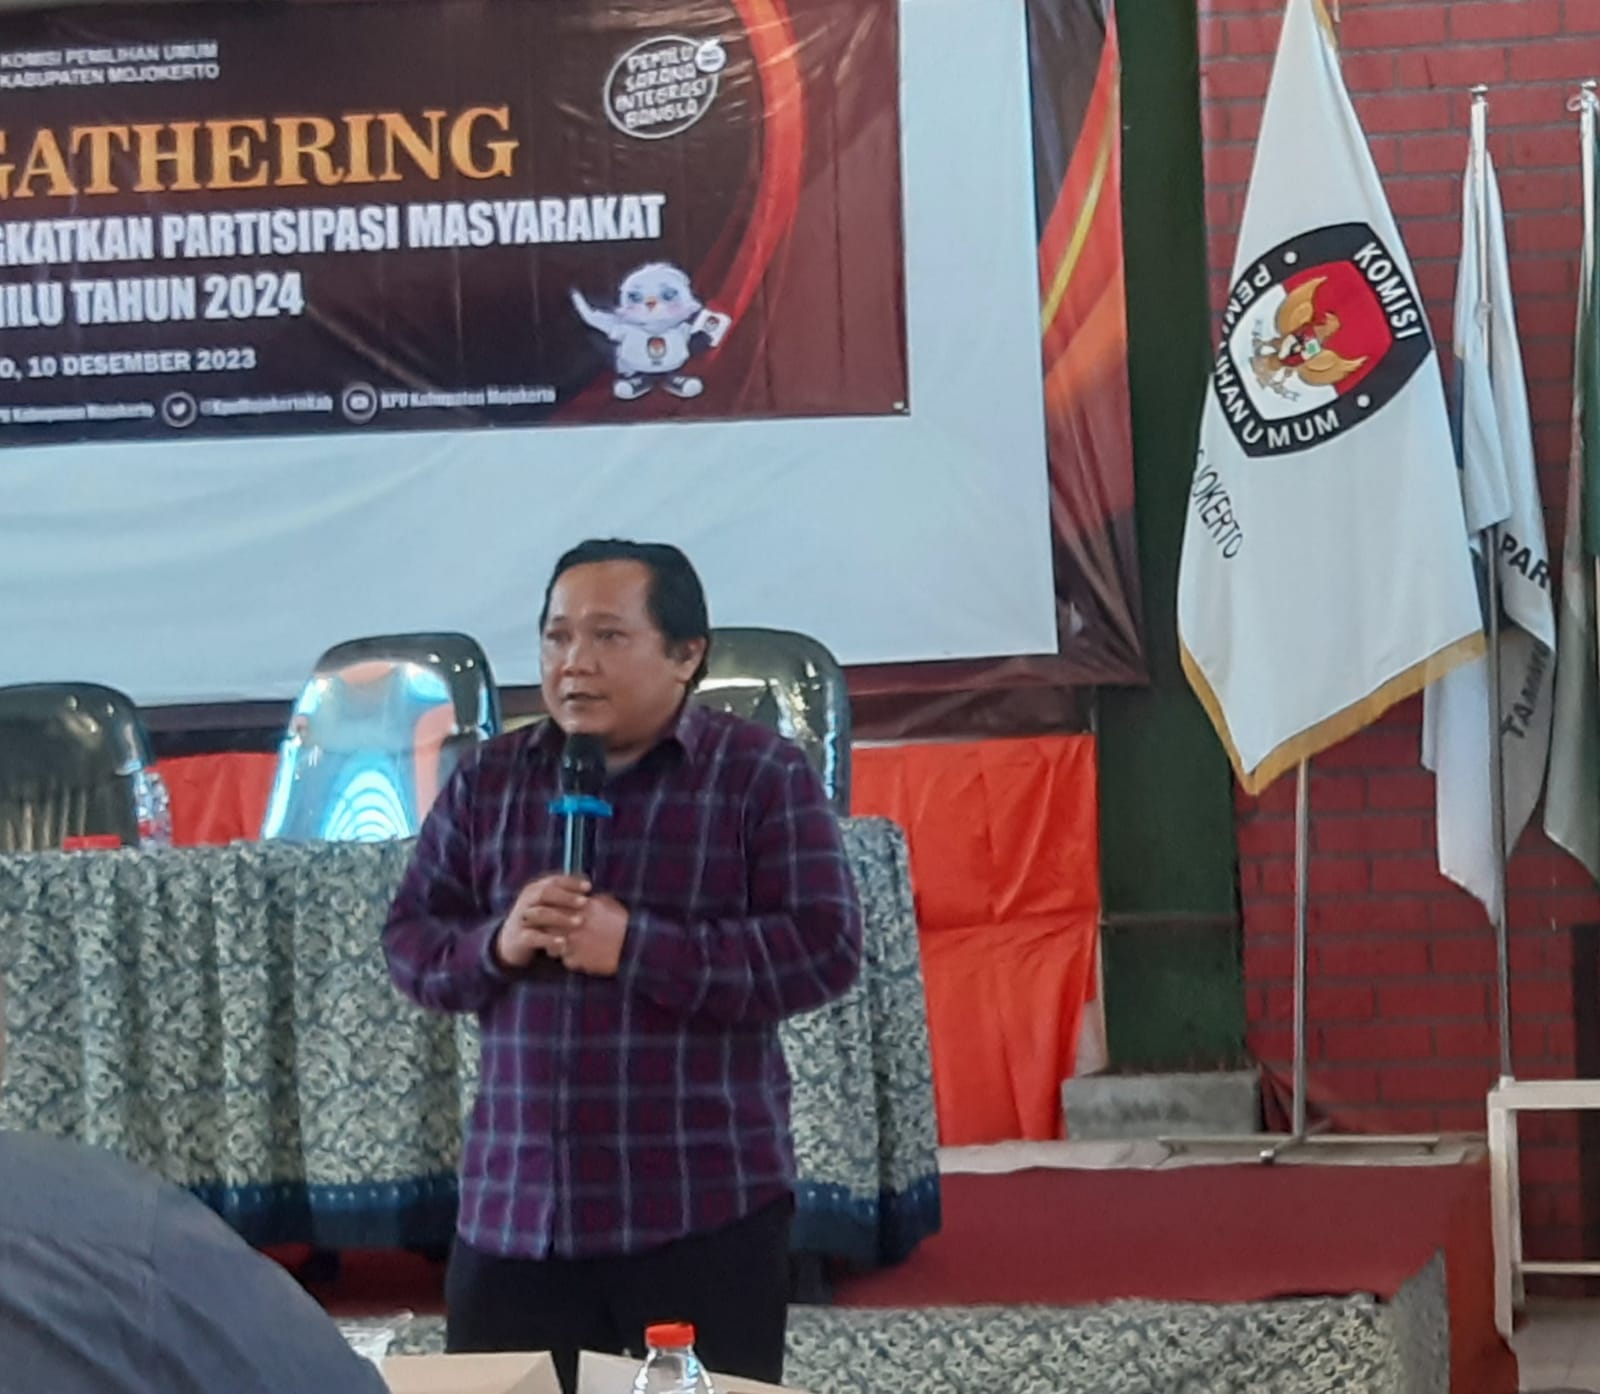 Gandeng Media, KPU Kabupaten Mojokerto Tingkatkan Partisipasi Masyarakat di Pemilu 2024